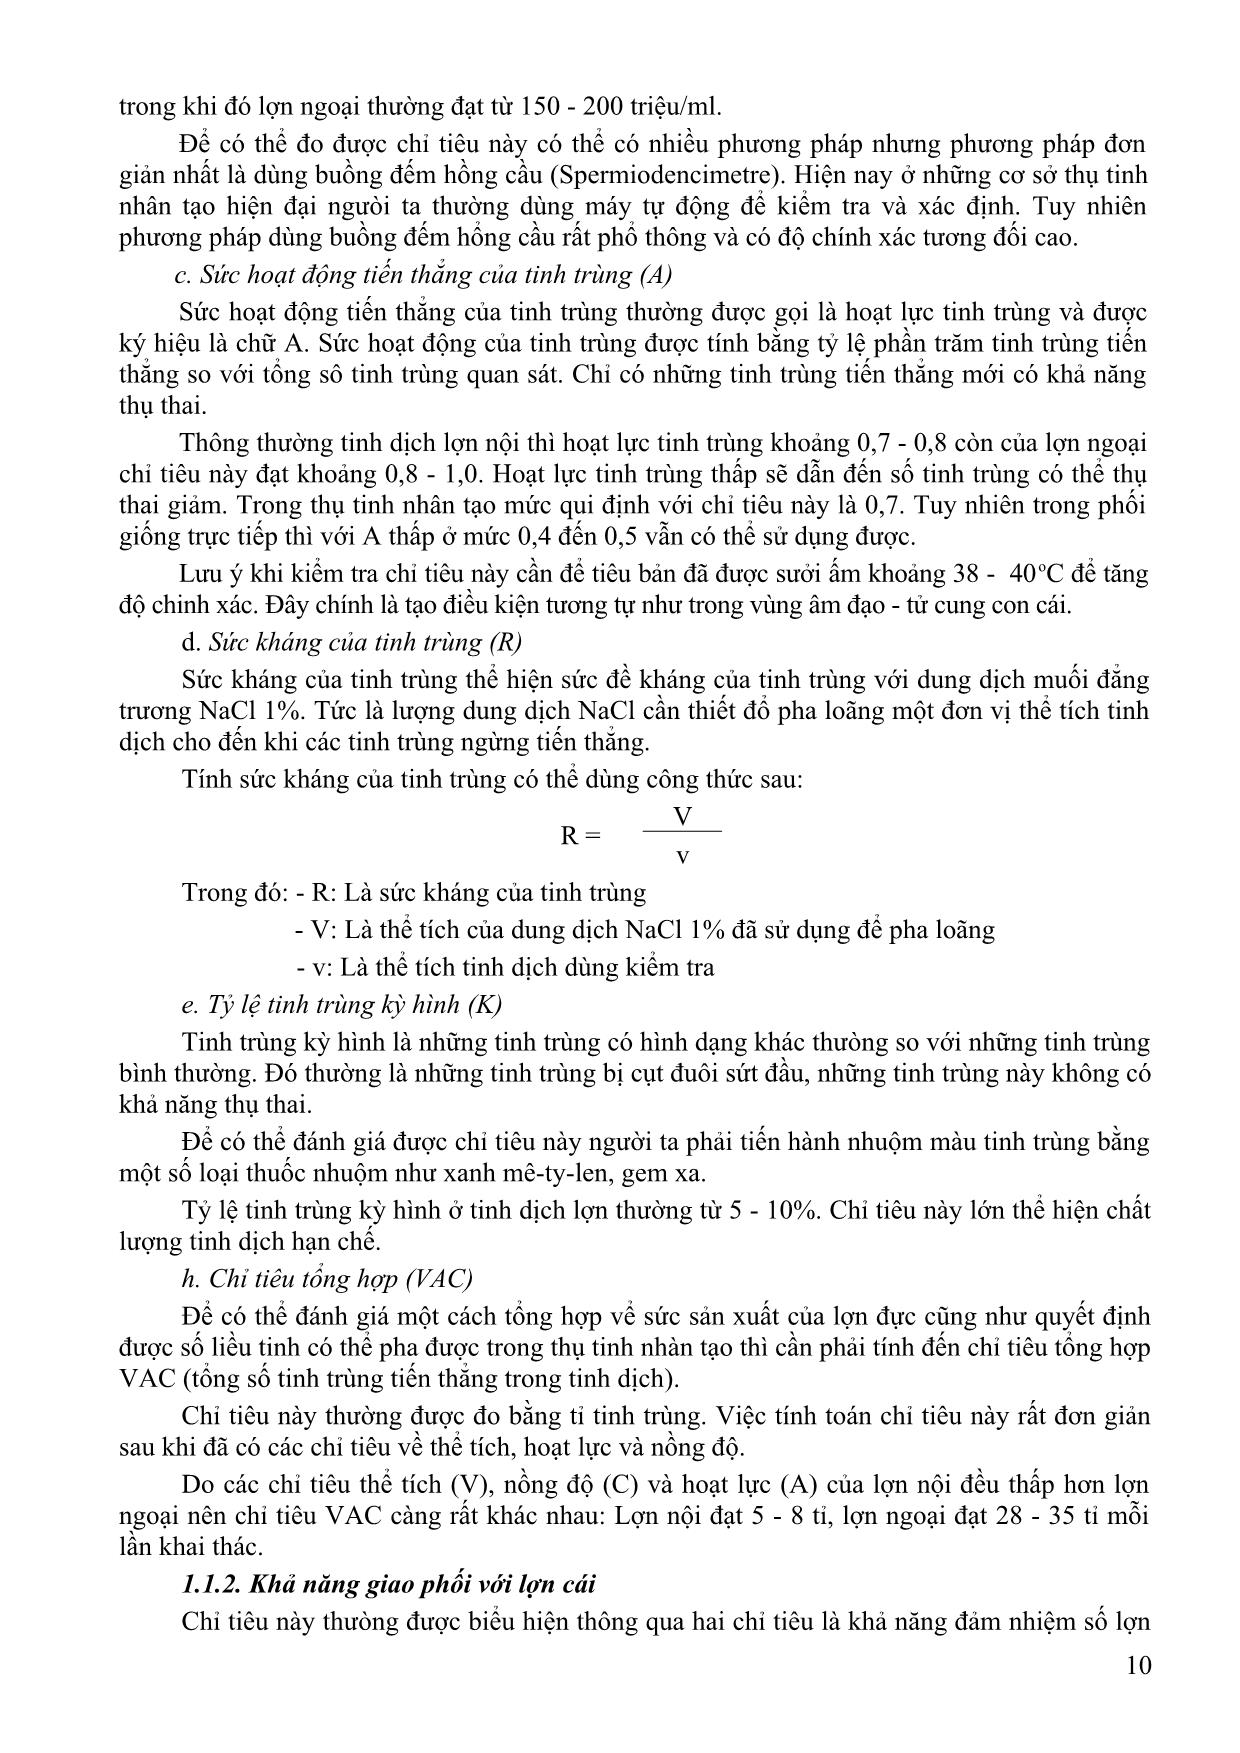 Bài giảng Chăn nuôi chuyên khoa - Dương Thị Thảo Chinh trang 9